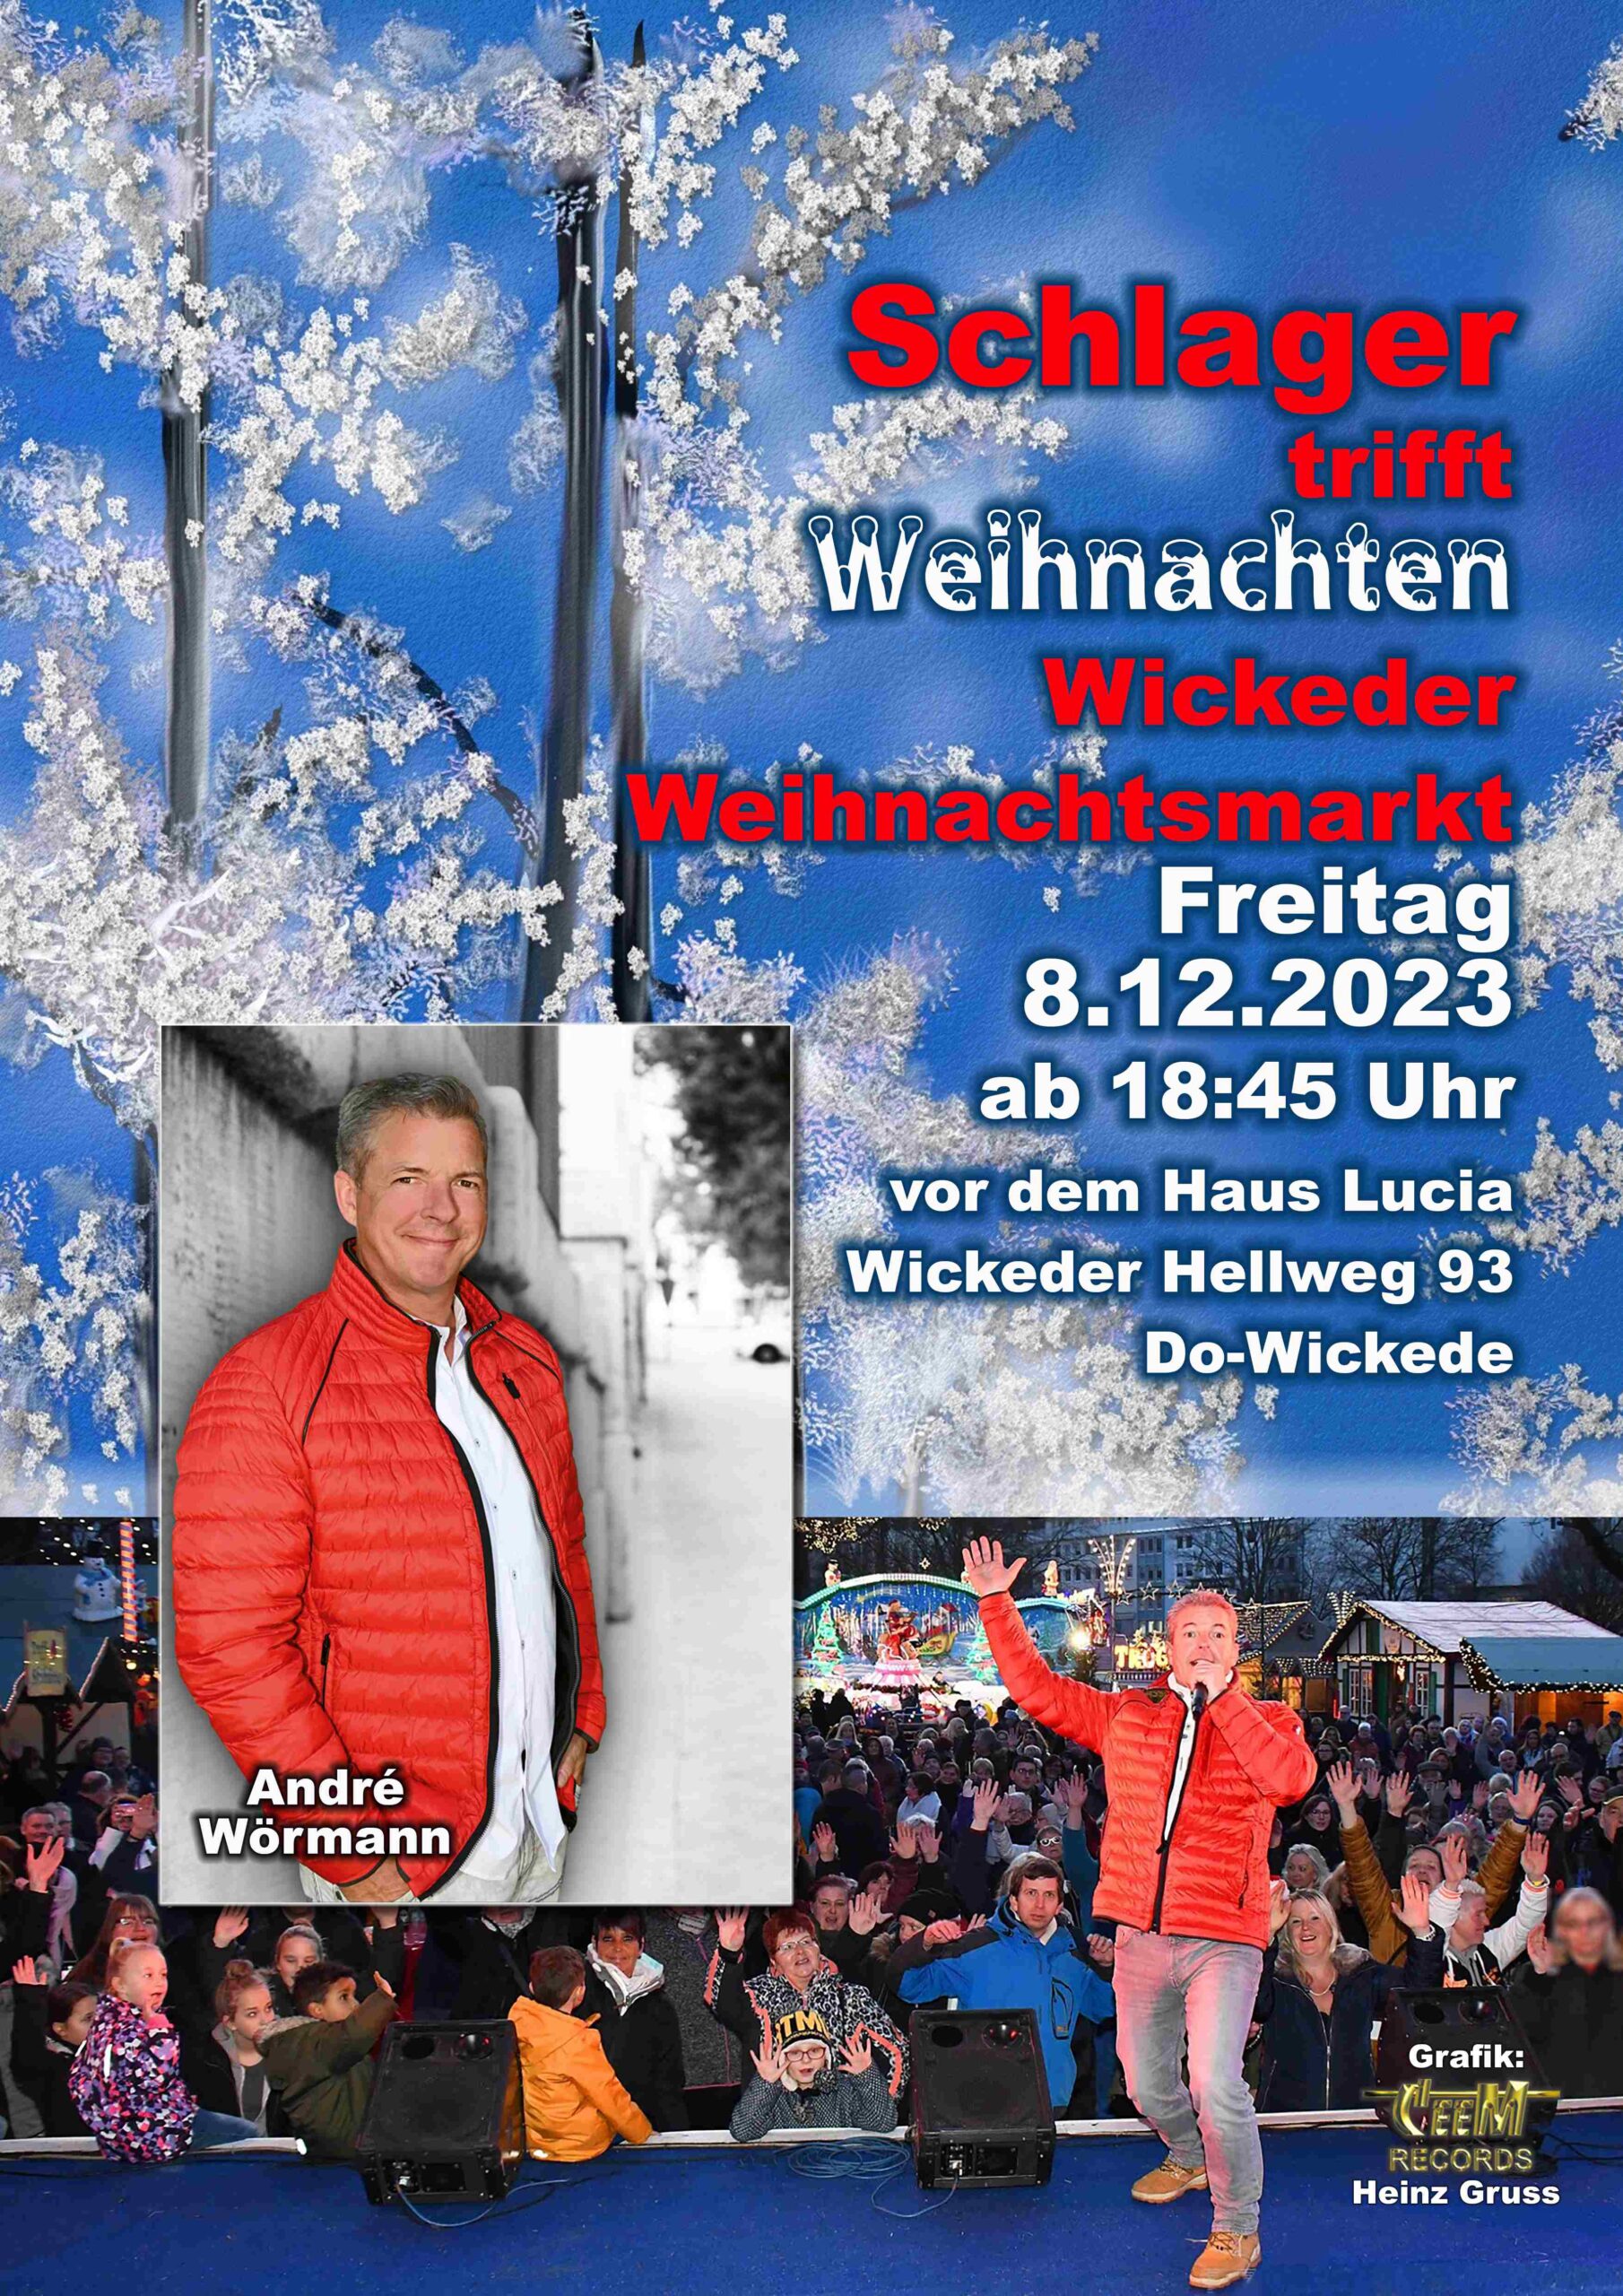 "Schlager trifft Weihnachten" - Weihnachtsmarkt Dortmund - Wickede / ÖFFENTLICH